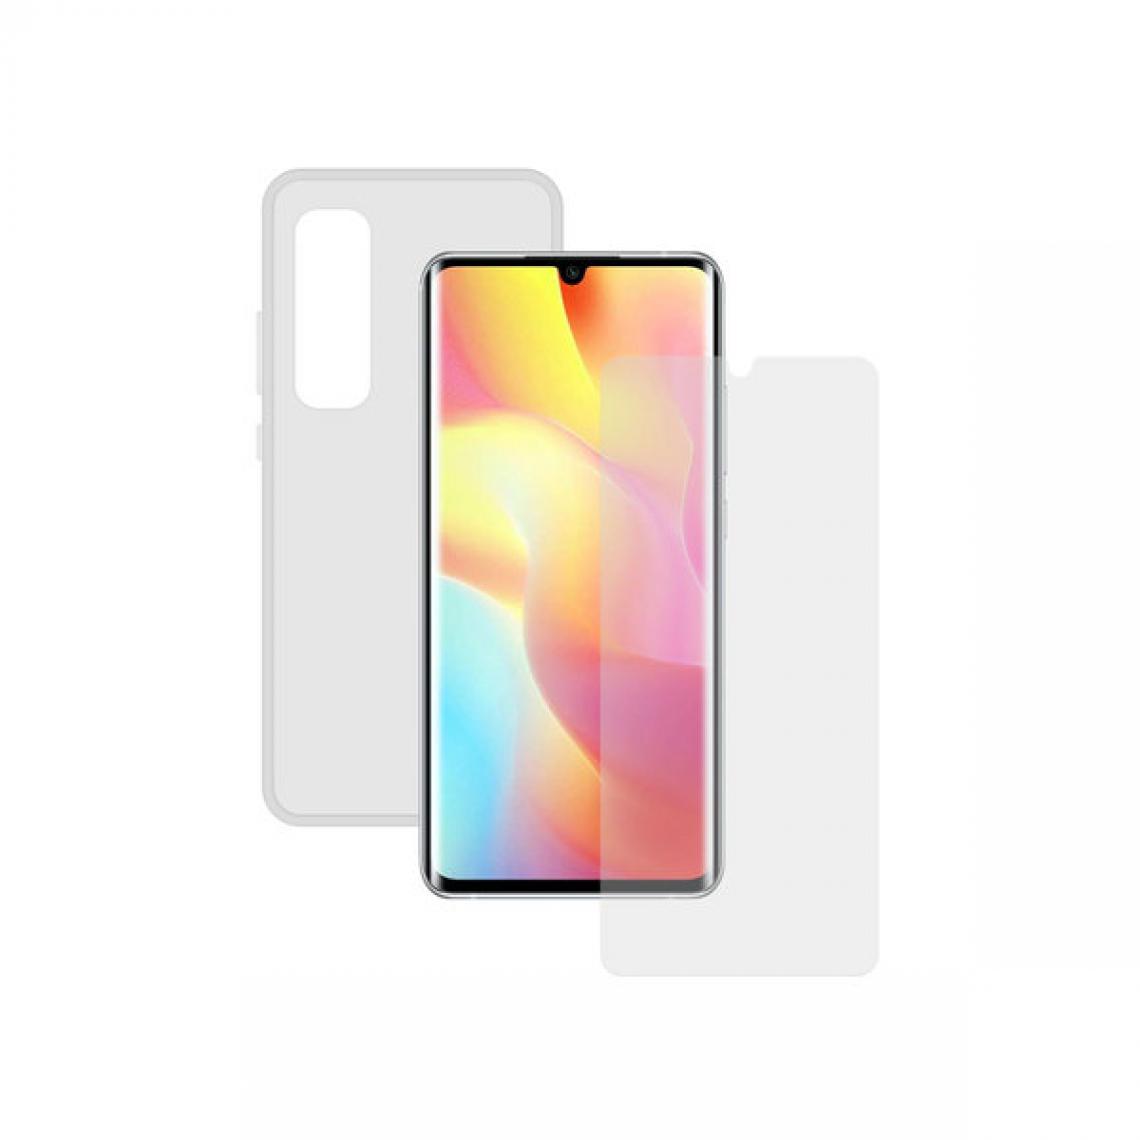 Uknow - Housse et Protecteur pour Téléphone Portable Xiaomi Mi 10 Lite Contact Transparent - Coque, étui smartphone